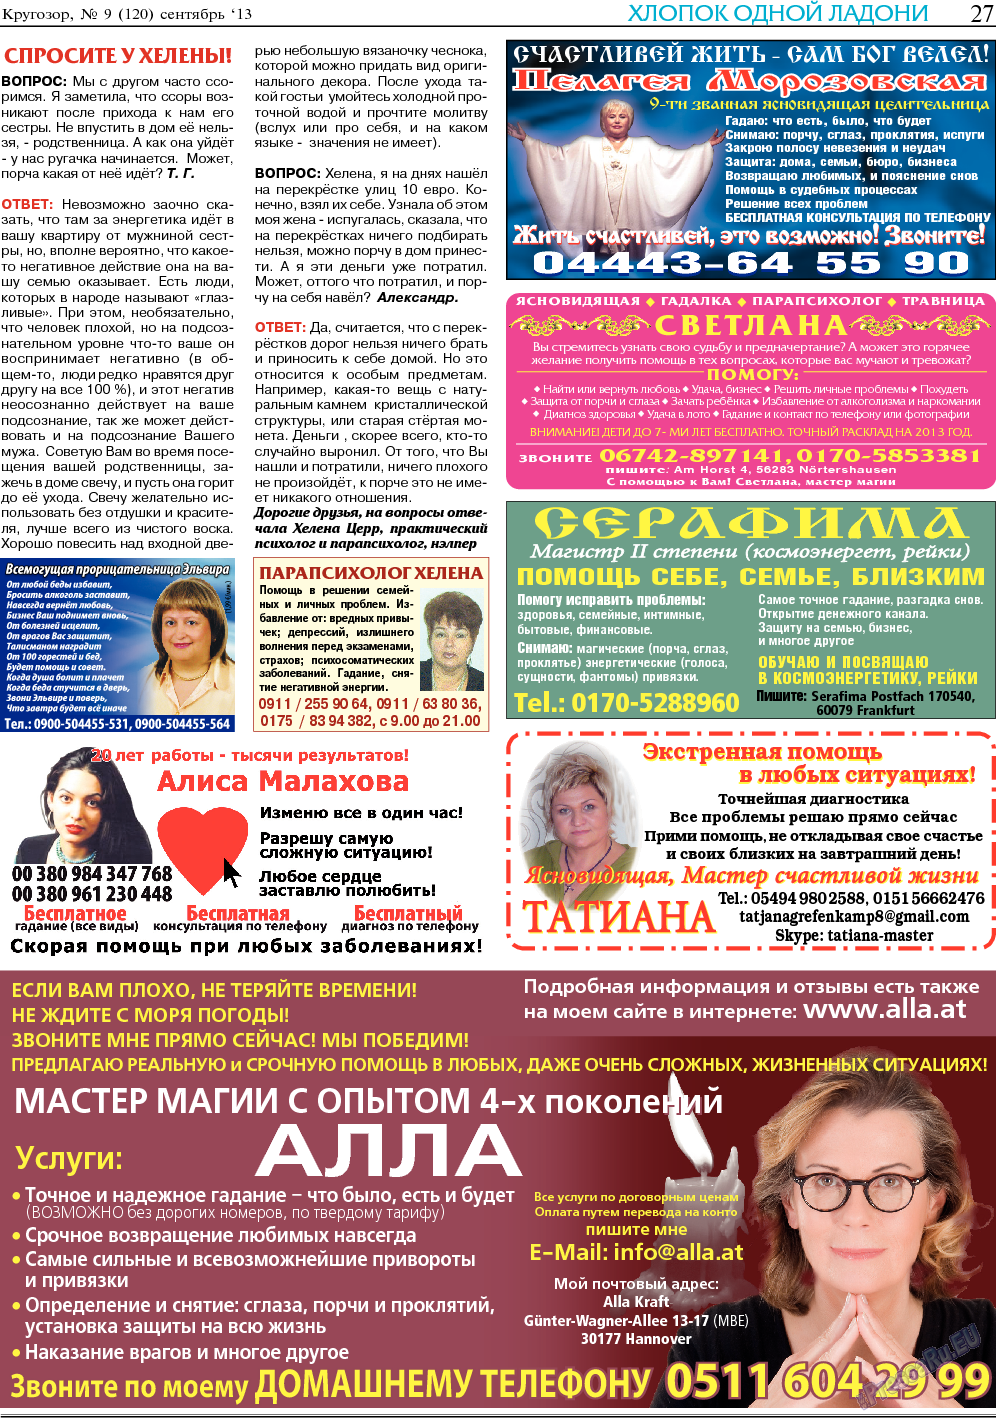 Кругозор, газета. 2013 №9 стр.27